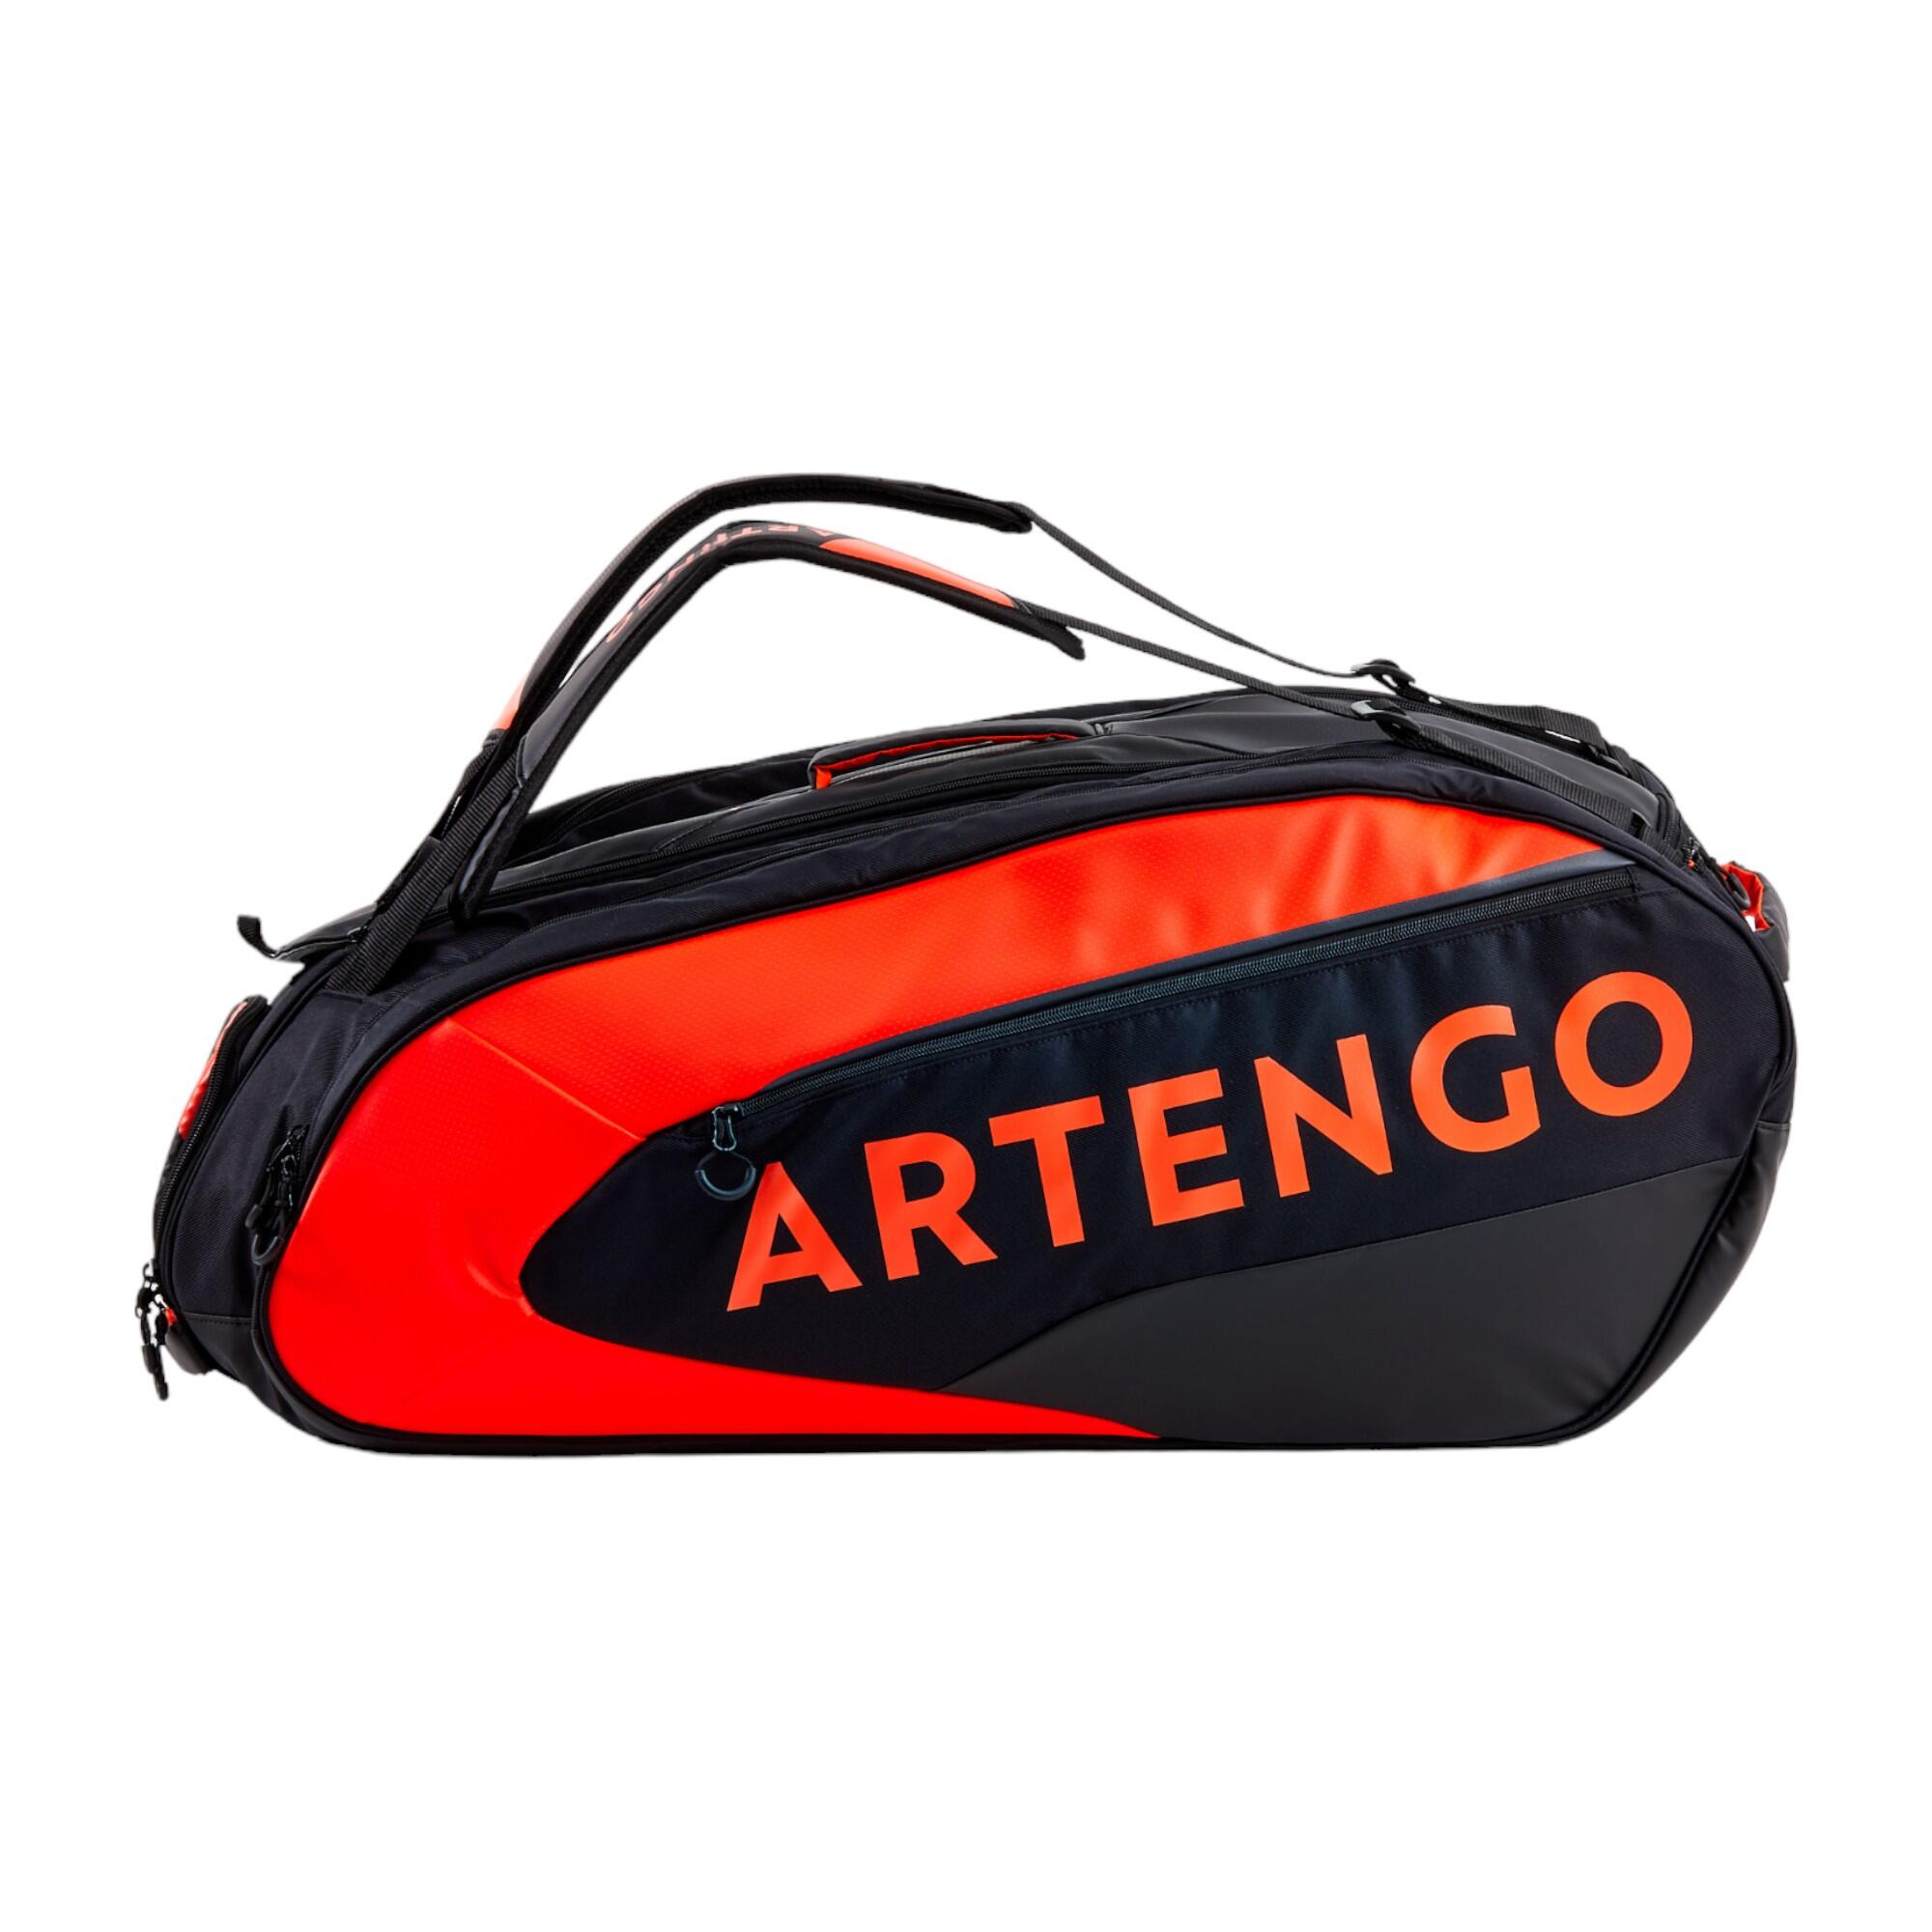 Artengo Tennis Bags